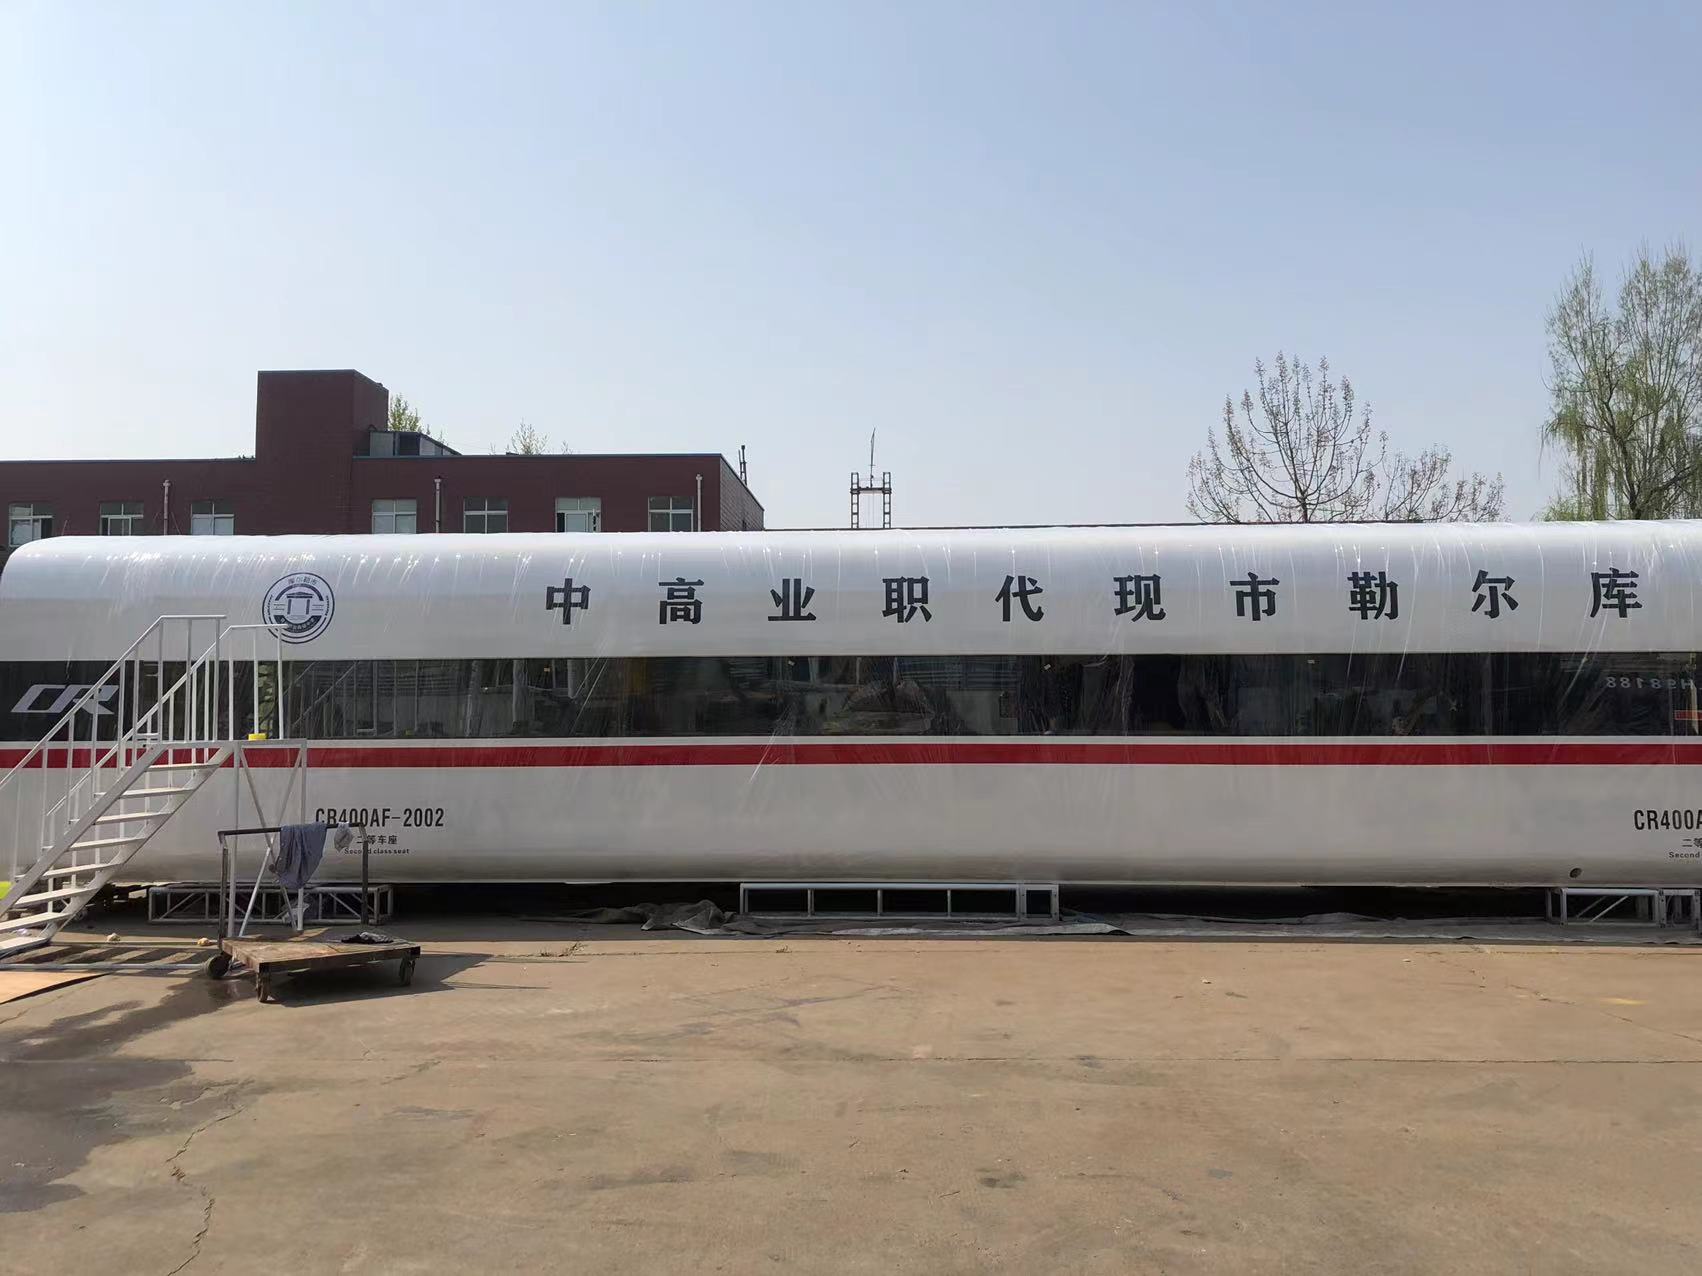 高铁模拟舱18米规格,大型高铁模型定制生产